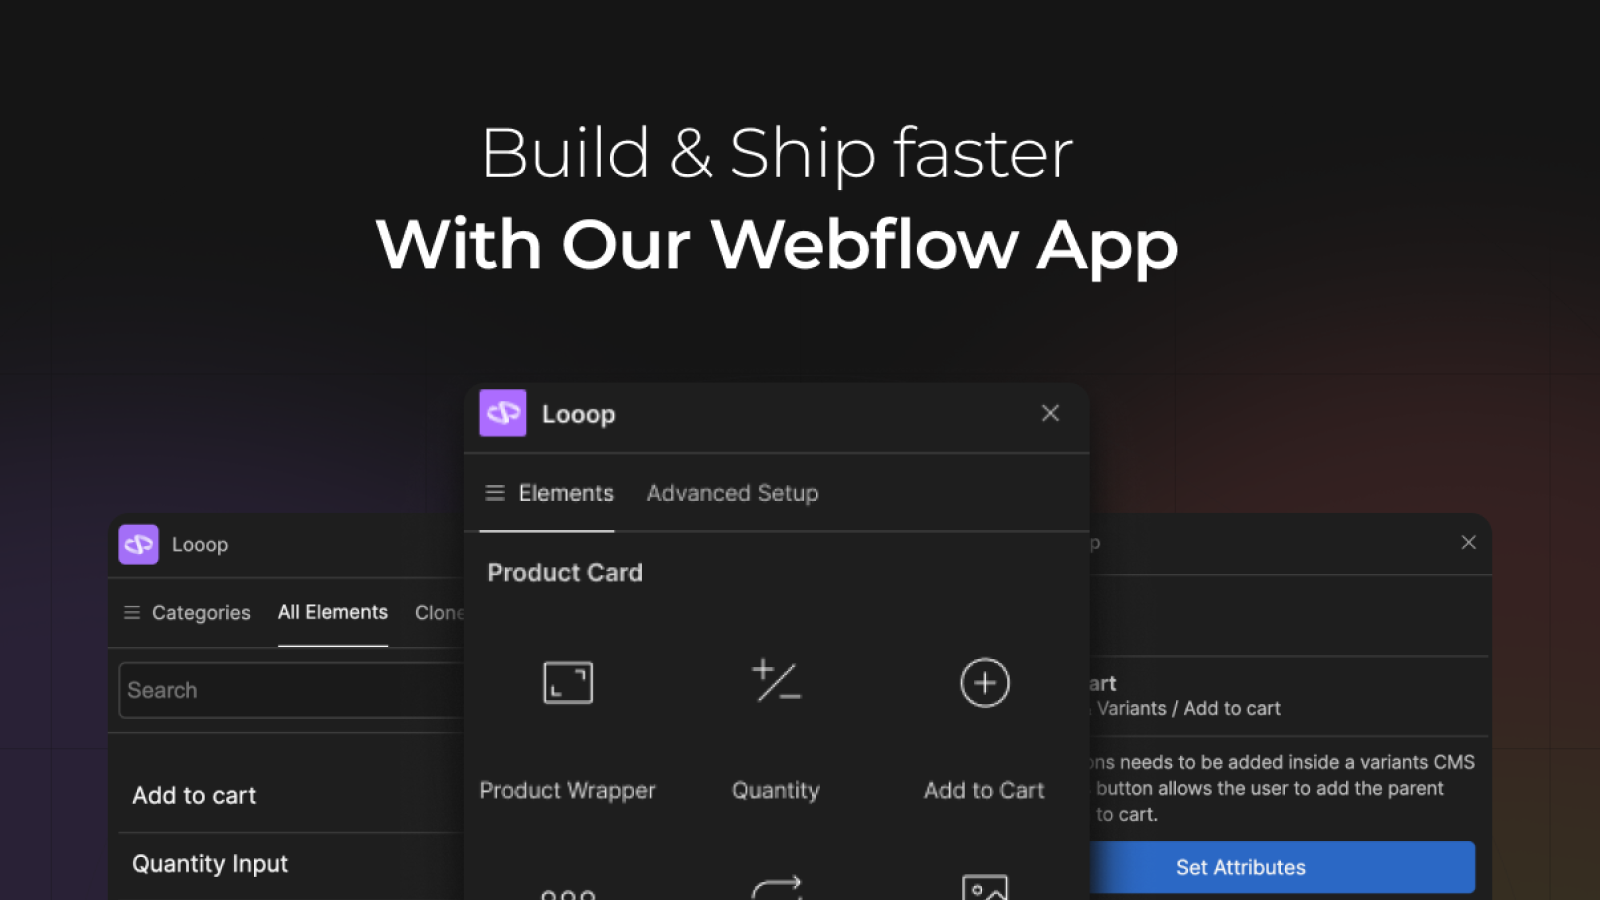 Bauen Sie schneller mit der offiziellen Webflow App von Looop